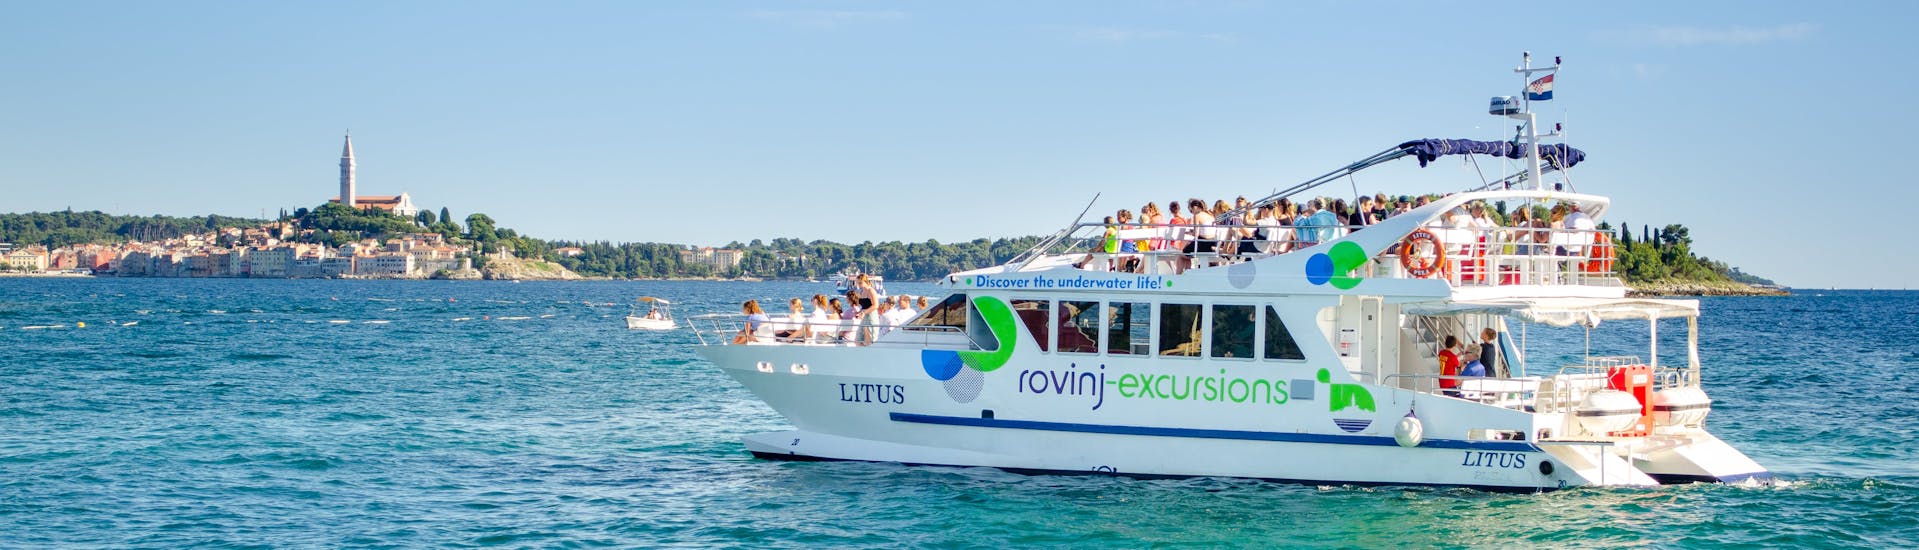 Le catamaran LITUS dans les eaux cristallines de l'Istrie lors de la balade en catamaran autour de Rovinj avec arrêt baignade avec Rovinj Excursions.